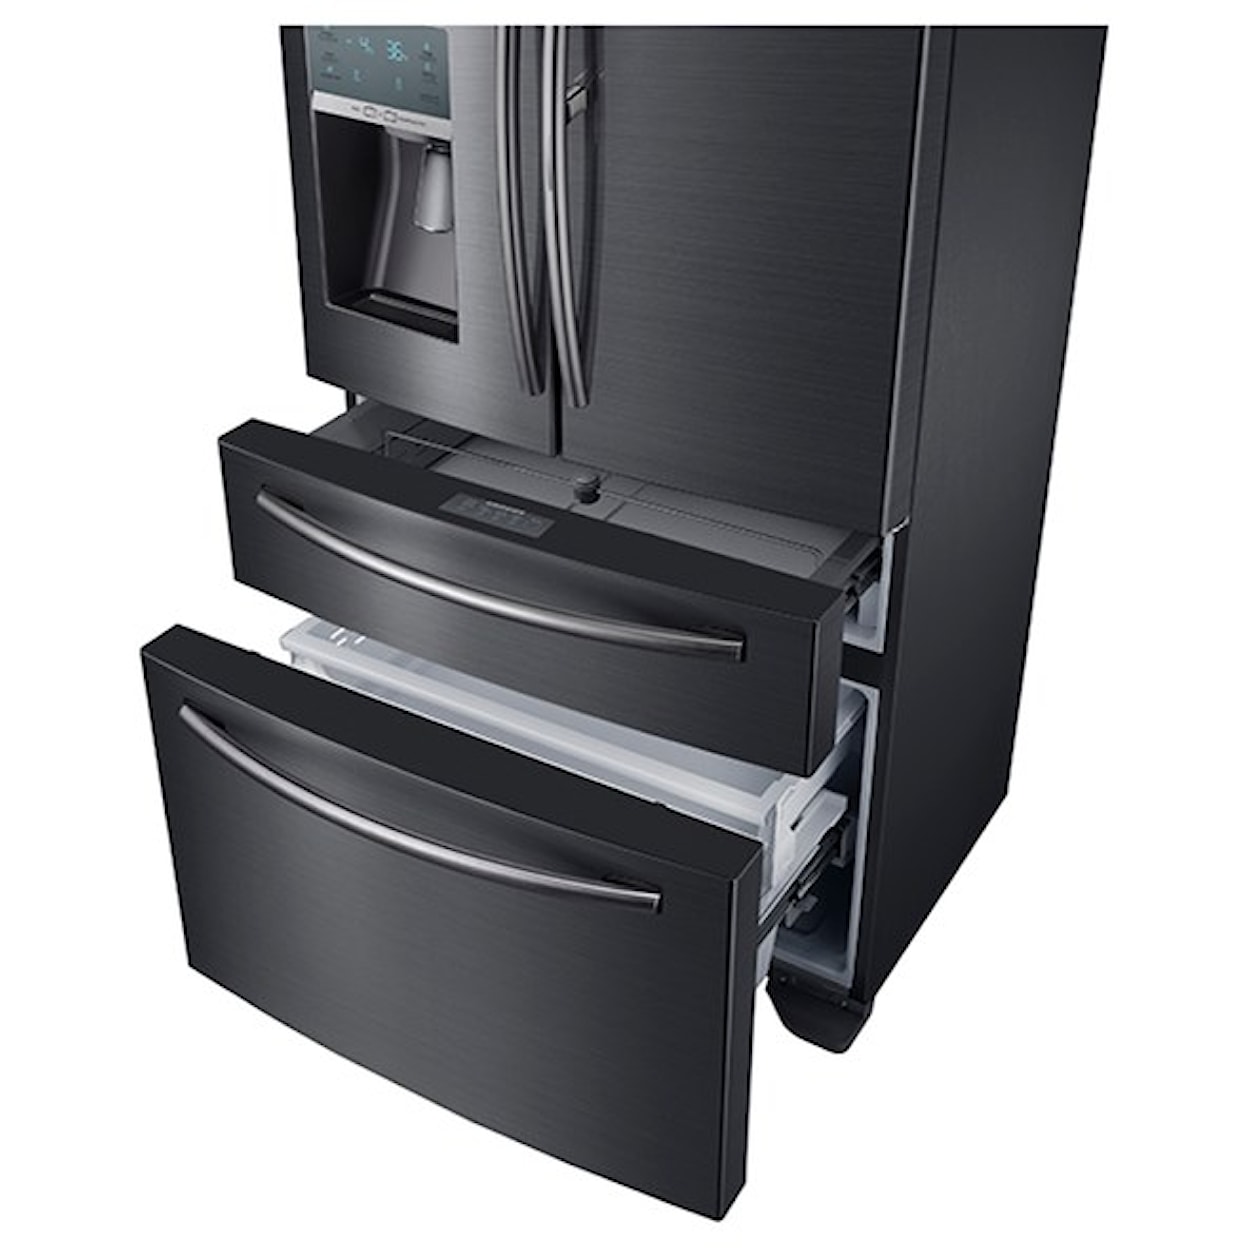 Samsung Appliances French Door Refrigerators 22 cu. ft. Counter Depth French Door Fridge